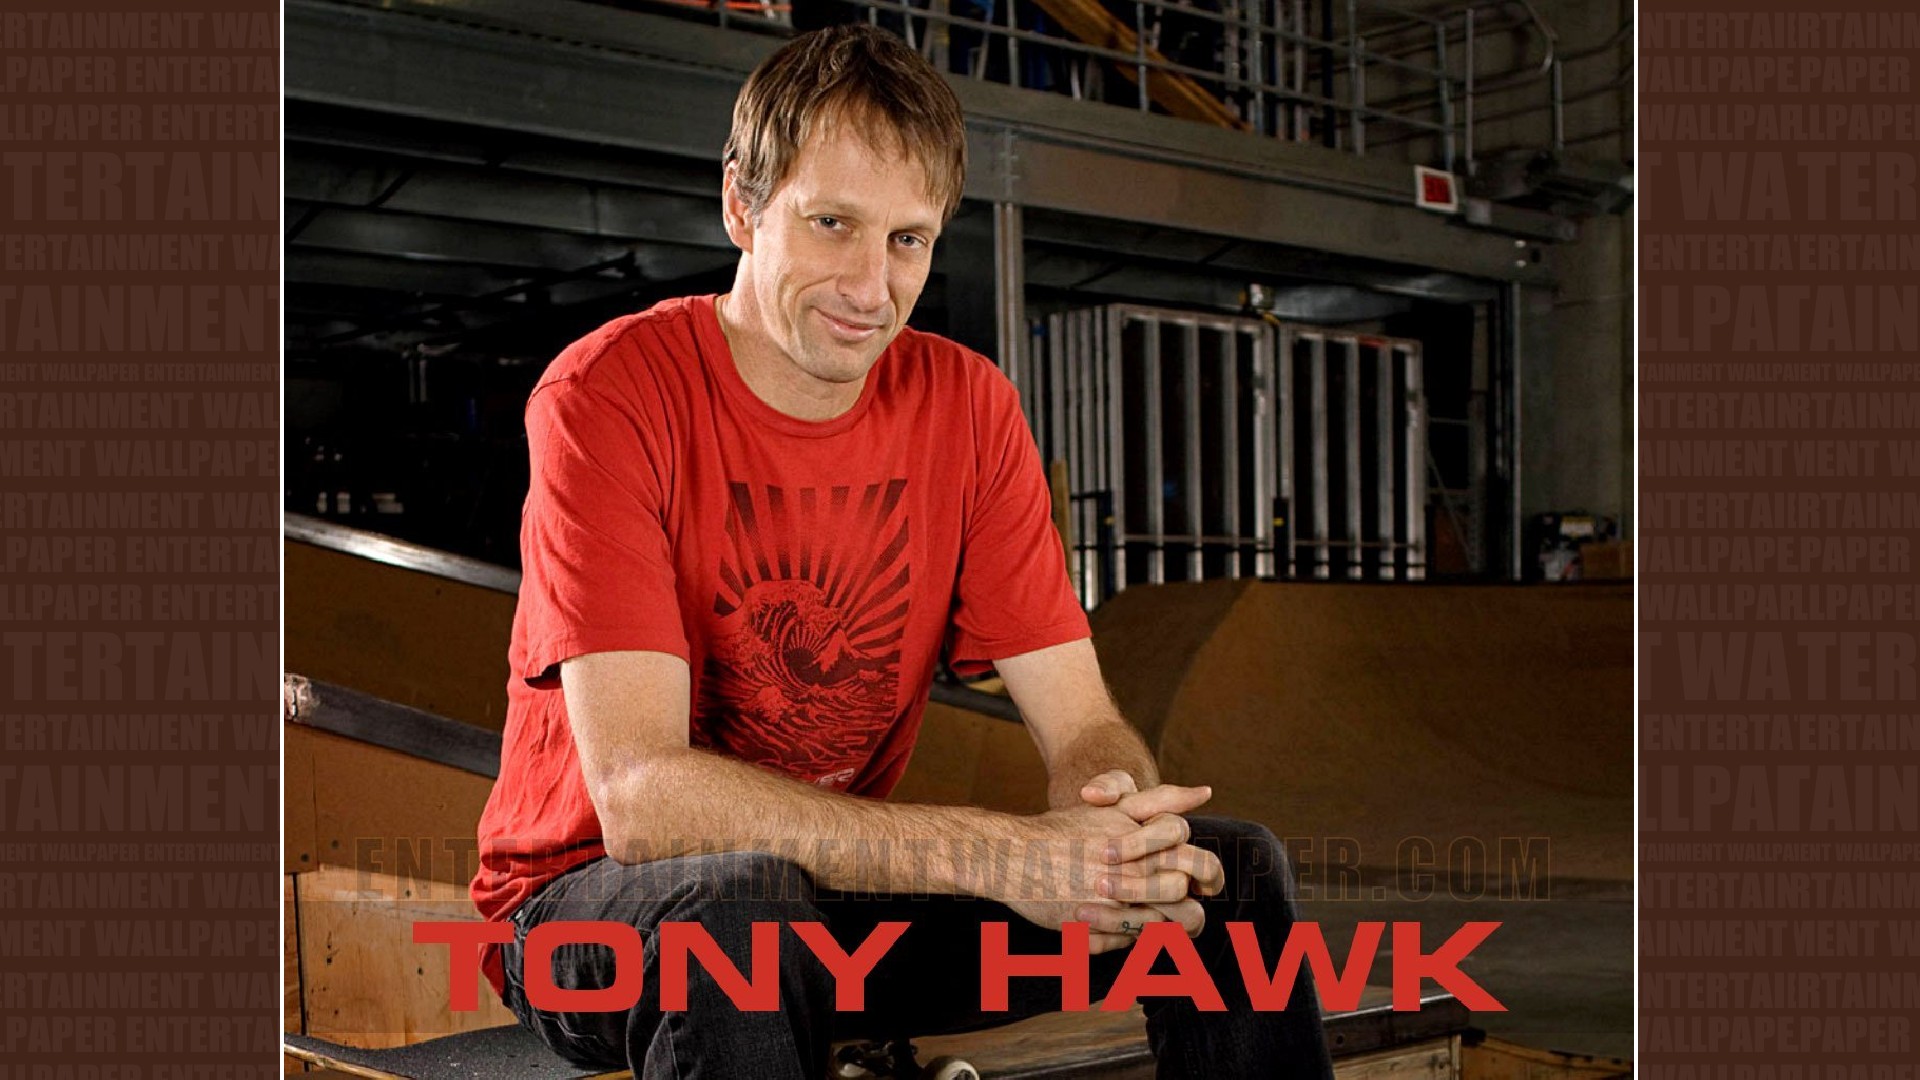 Tony Hawk Wallpaper - Original size, download now.